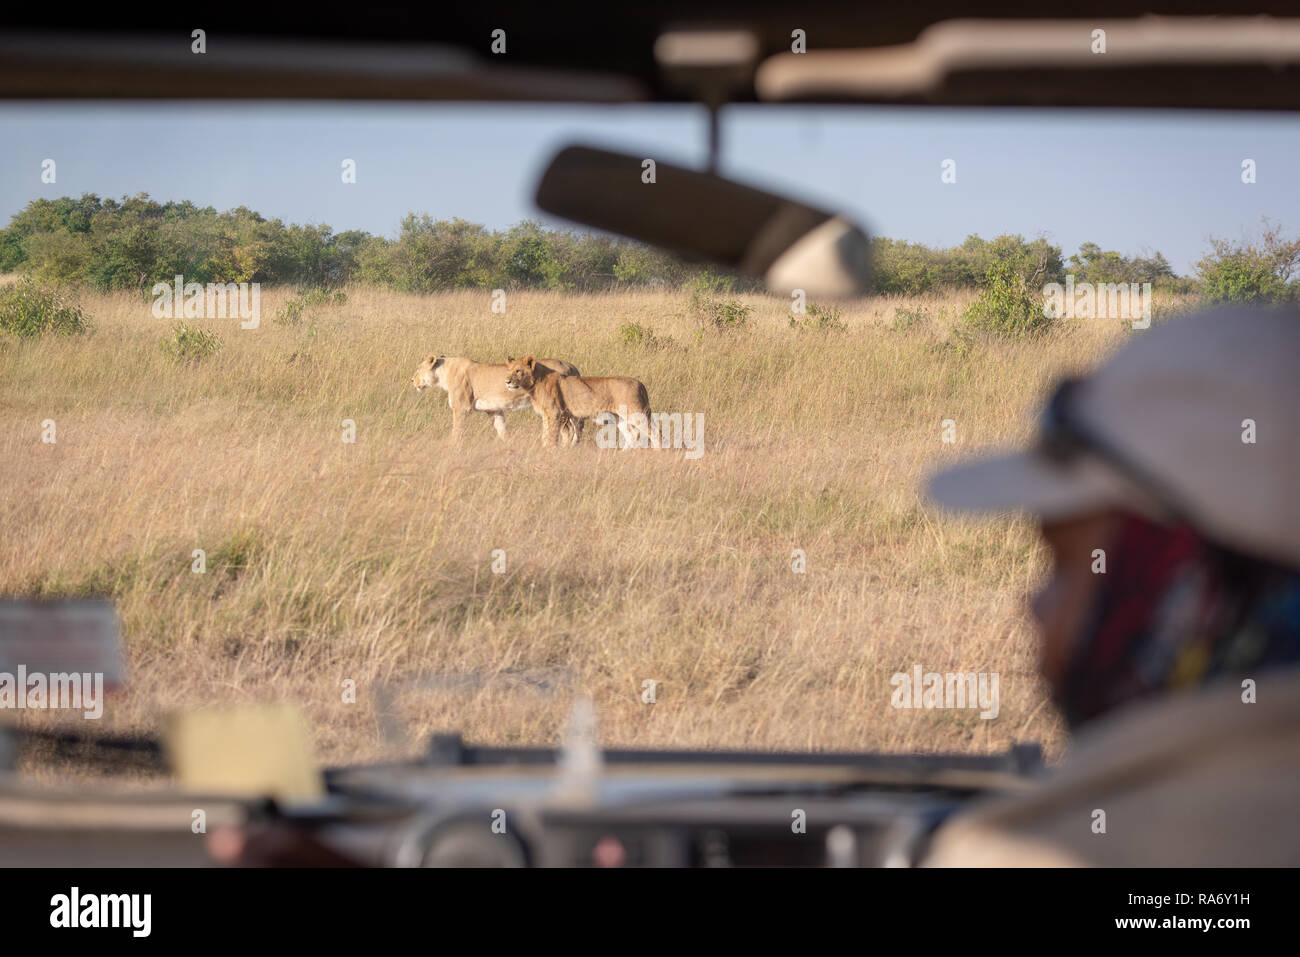 Dos leonas vistos a través del parabrisas camión safari Foto de stock